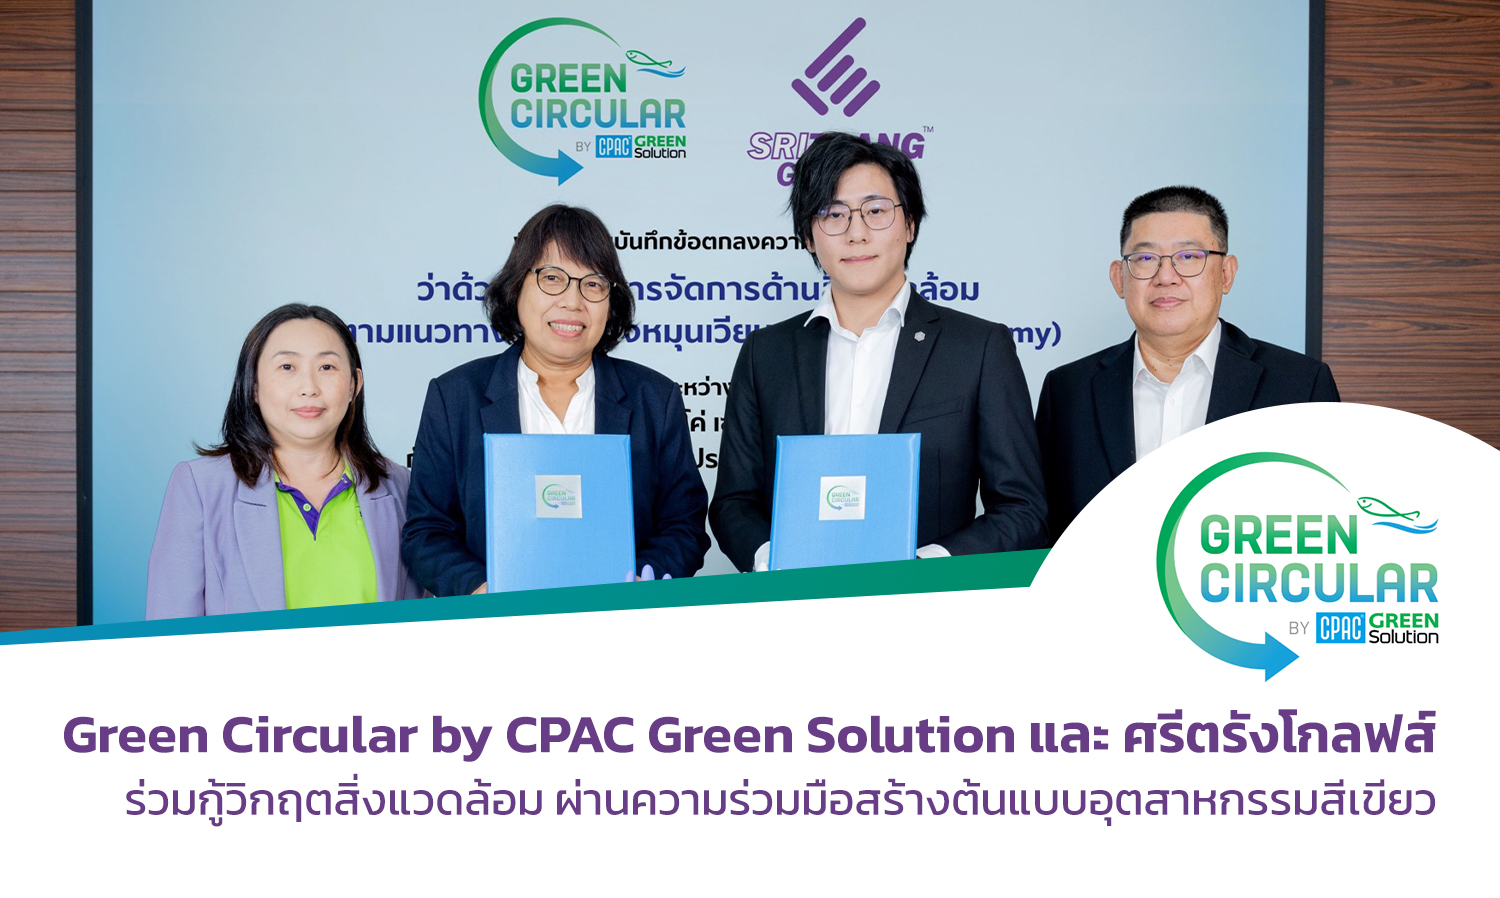 Green Circular by CPAC Green Solution และ ศรีตรังโกลฟส์ ร่วมกู้วิกฤตสิ่งแวดล้อม ผ่านความร่วมมือสร้างต้นแบบอุตสาหกรรมสีเขียว